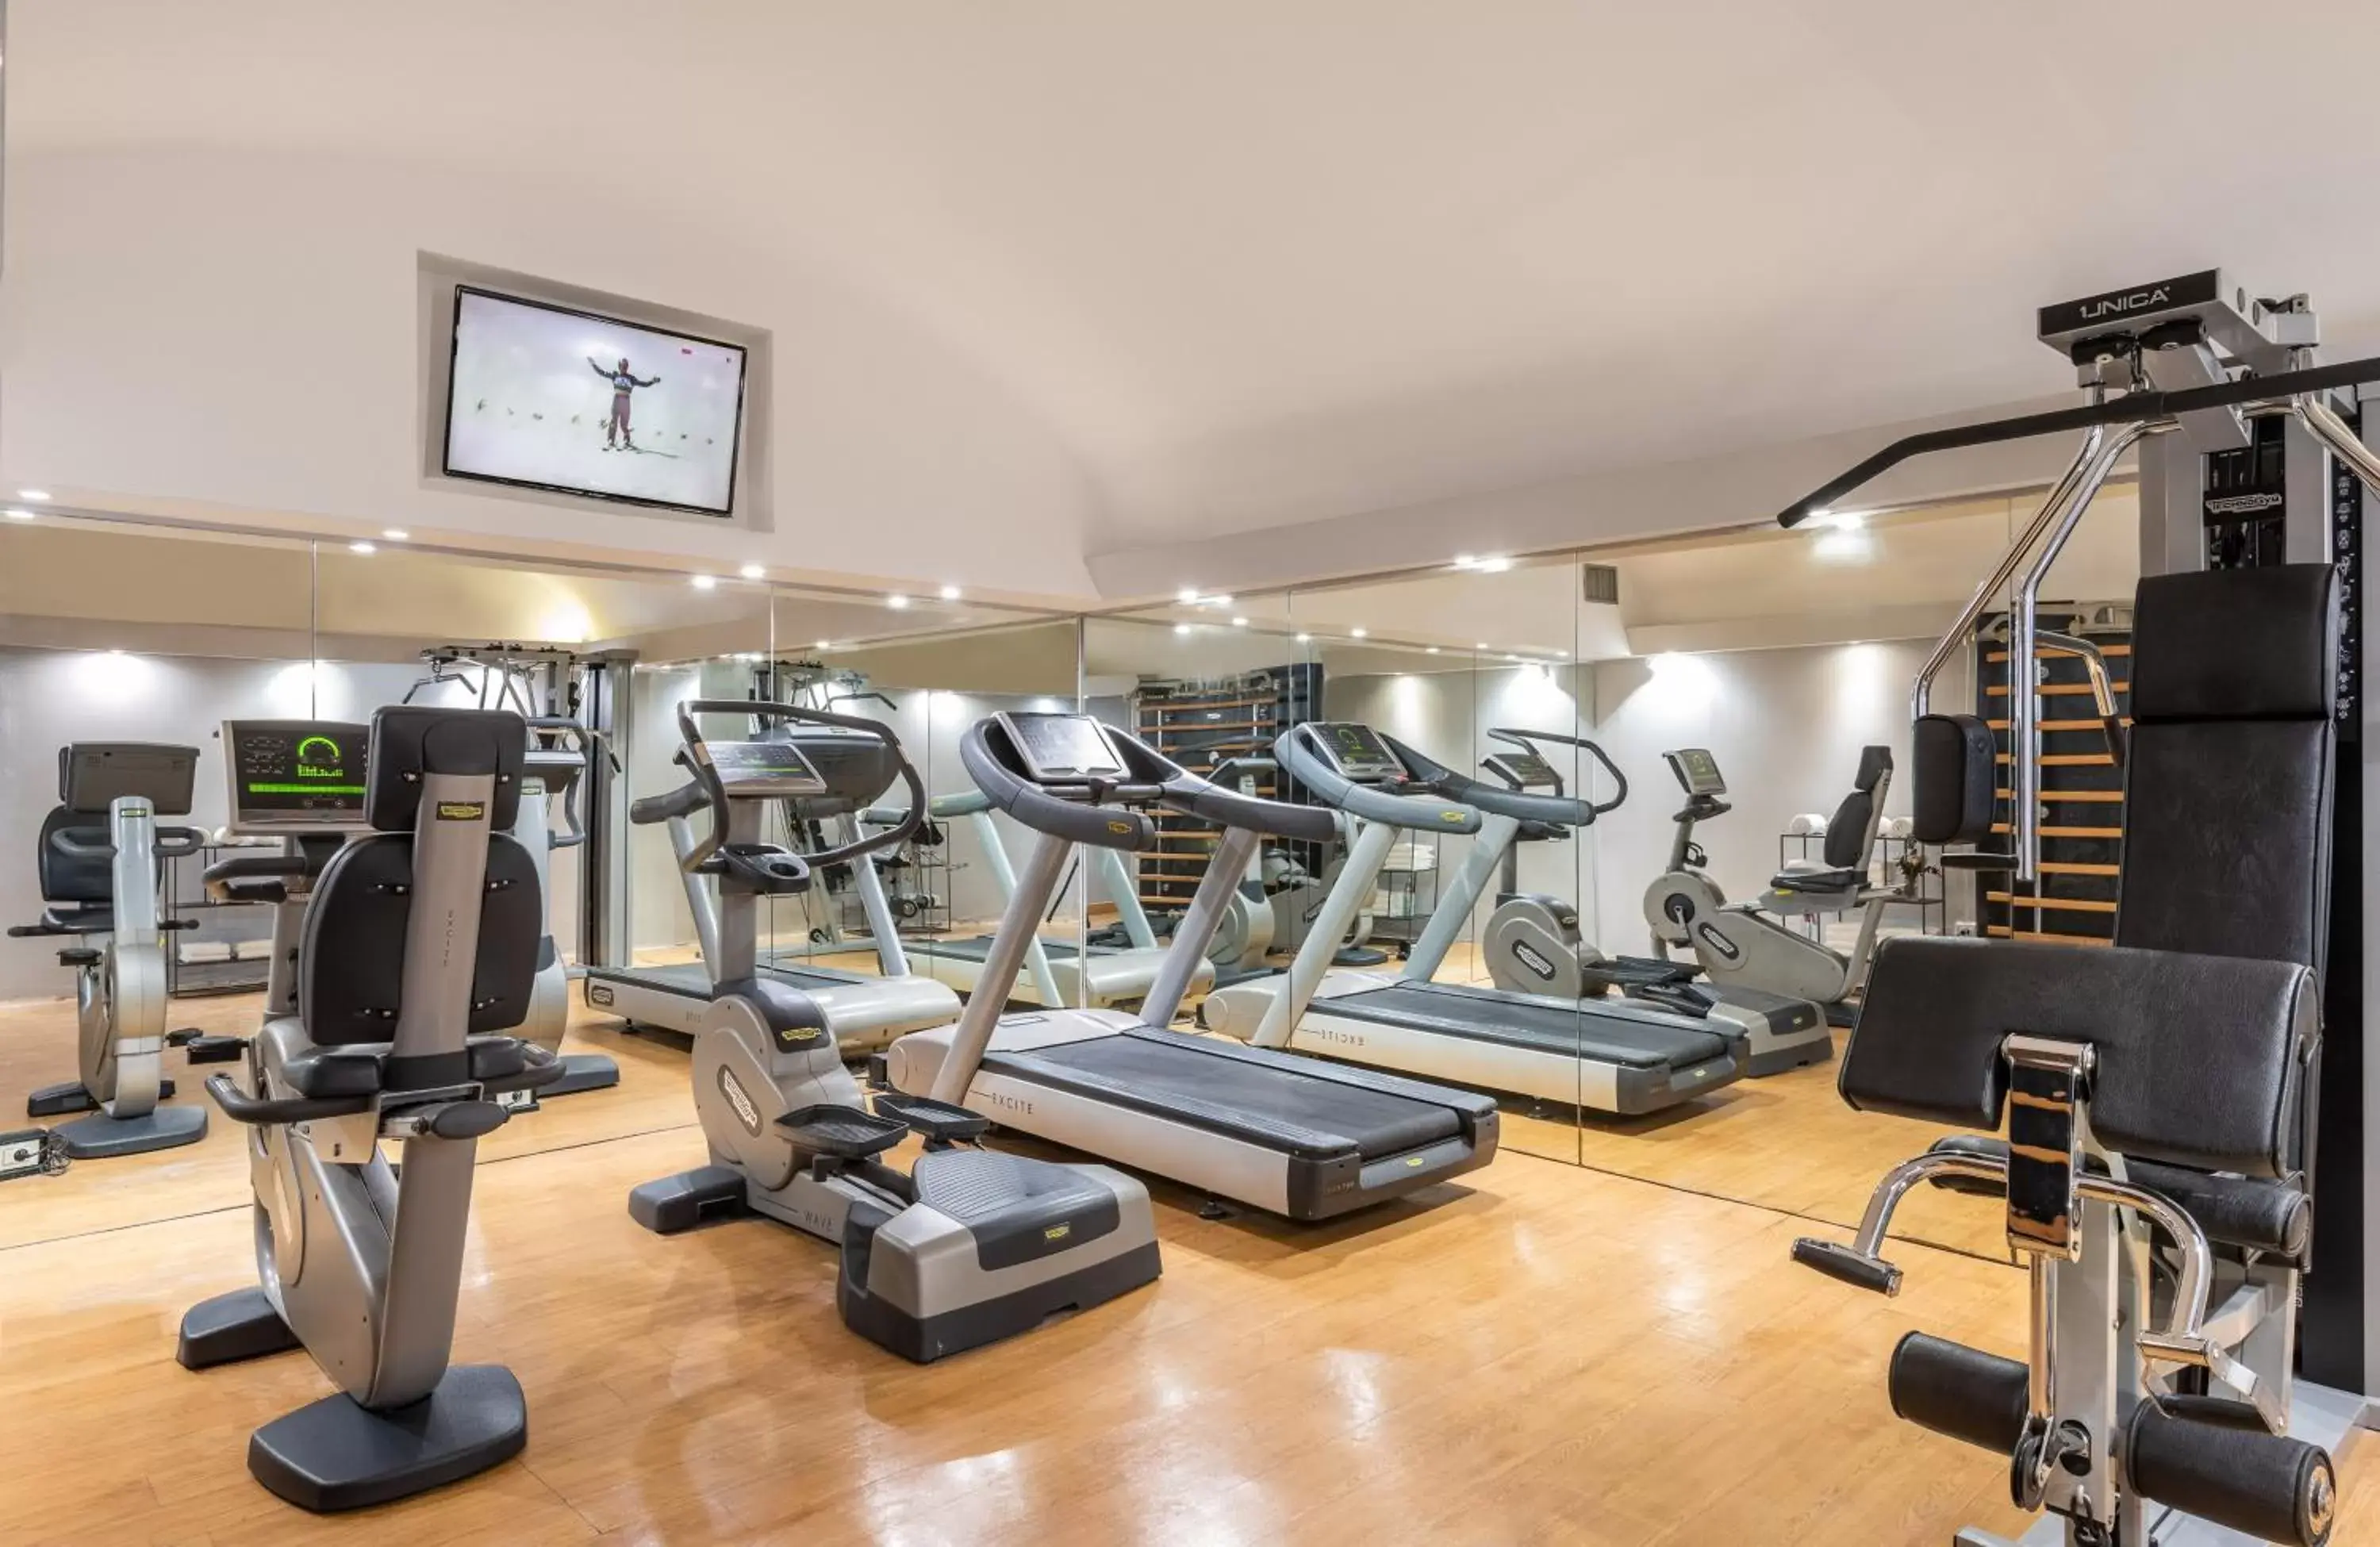 Fitness centre/facilities, Fitness Center/Facilities in Leonardo Boutique Hotel Rome Termini